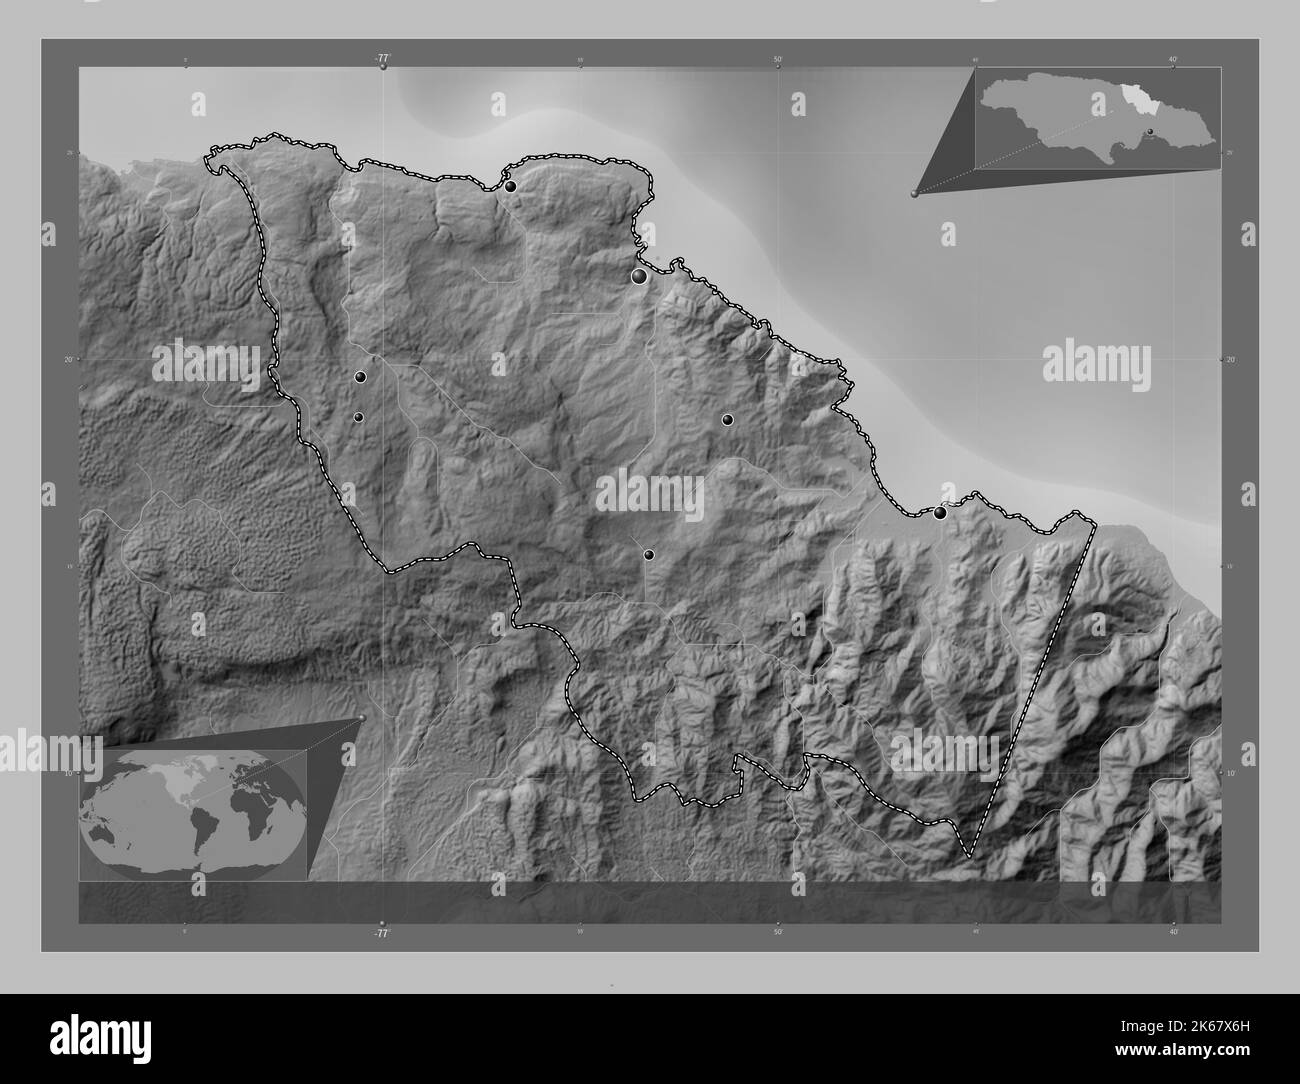 Sainte Marie, paroisse de la Jamaïque. Carte d'altitude en niveaux de gris avec lacs et rivières. Lieux des principales villes de la région. Cartes d'emplacement auxiliaire d'angle Banque D'Images